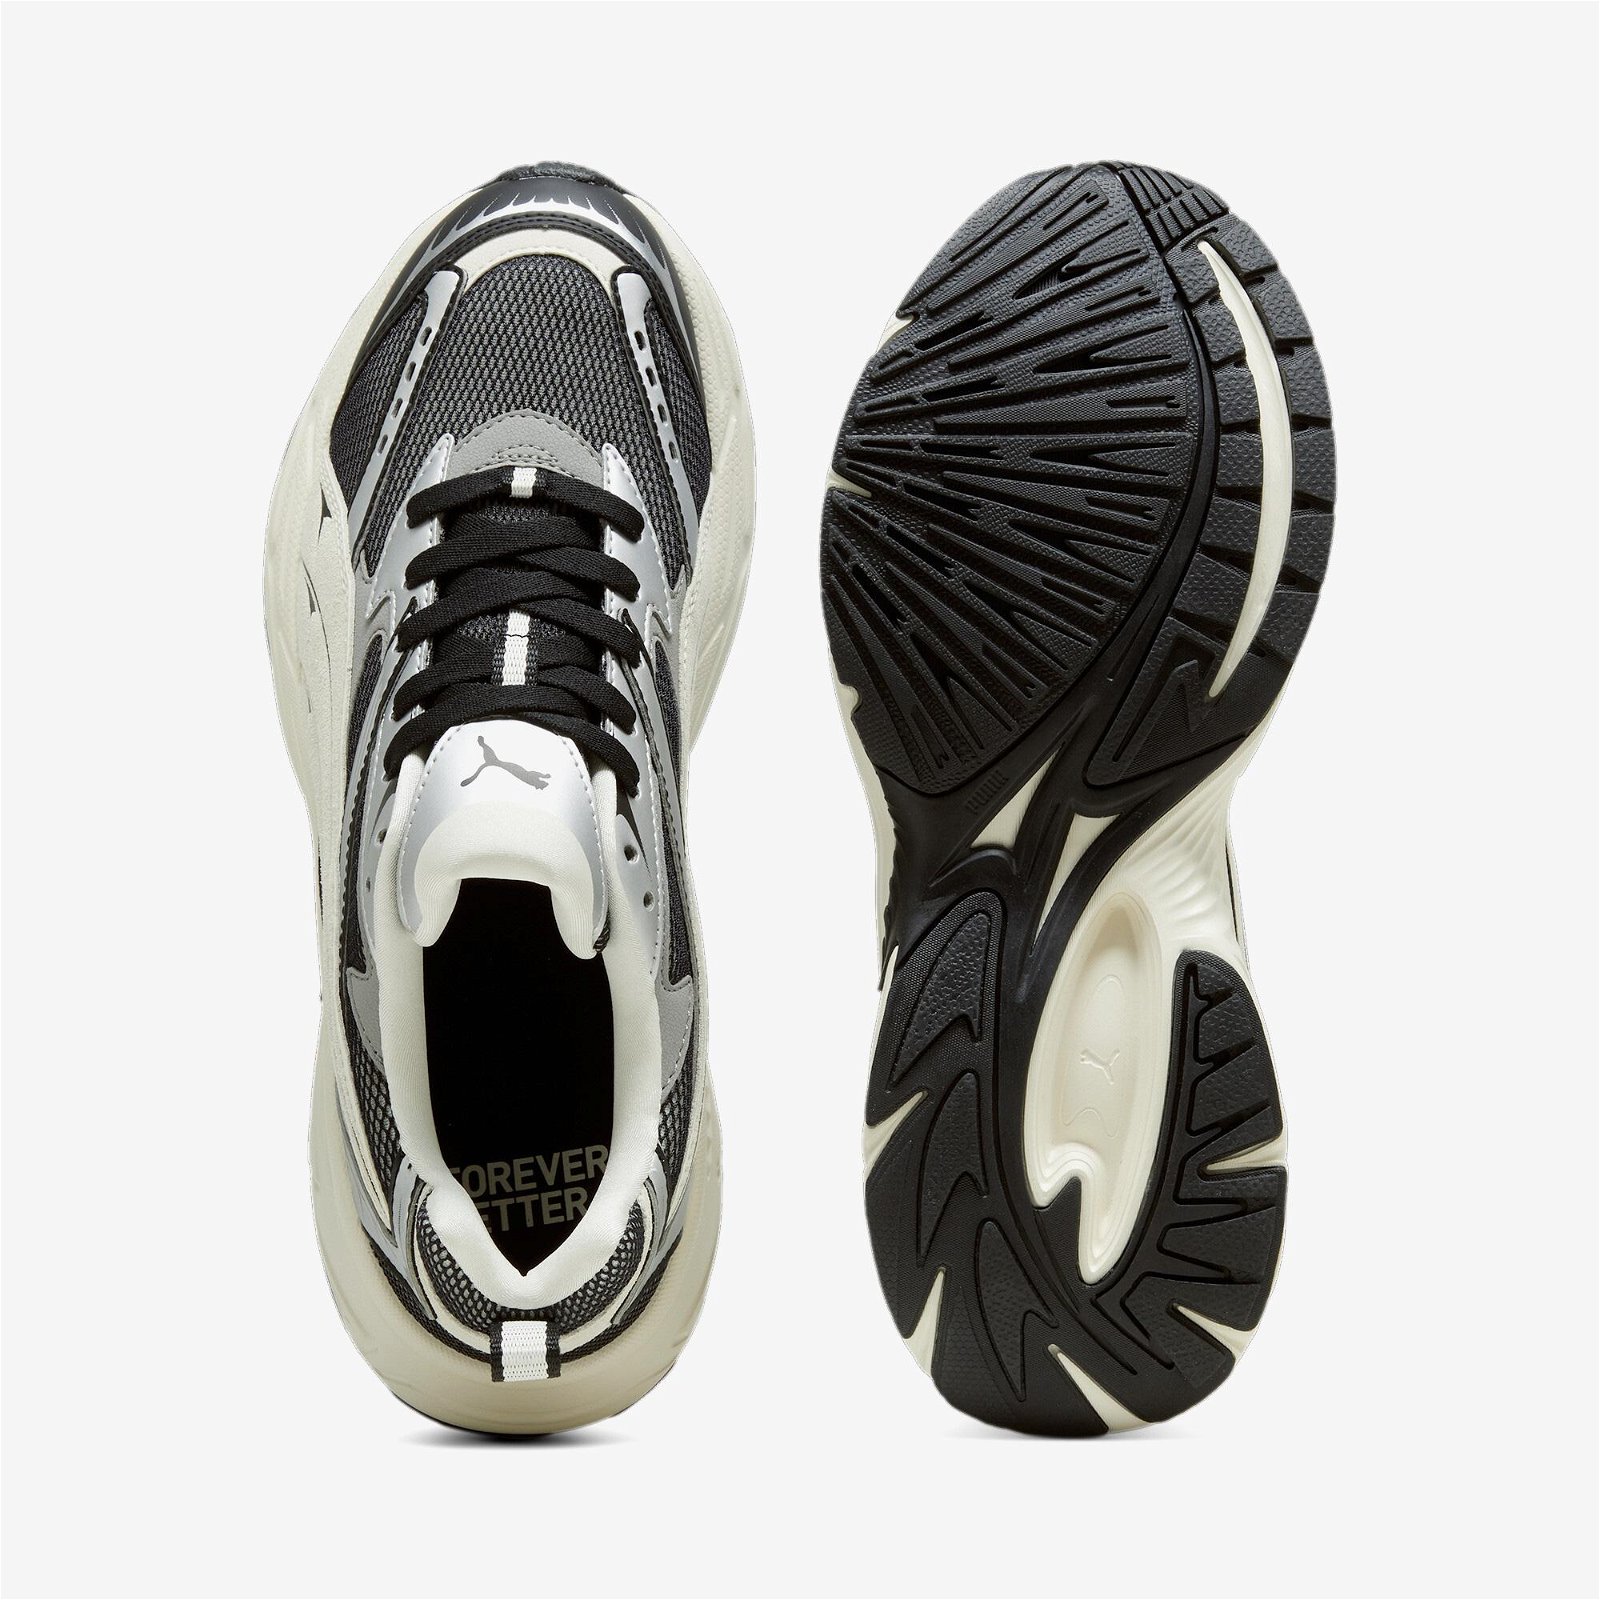 Puma Morphic Retro Unisex Siyah/Beyaz Spor Ayakkabı